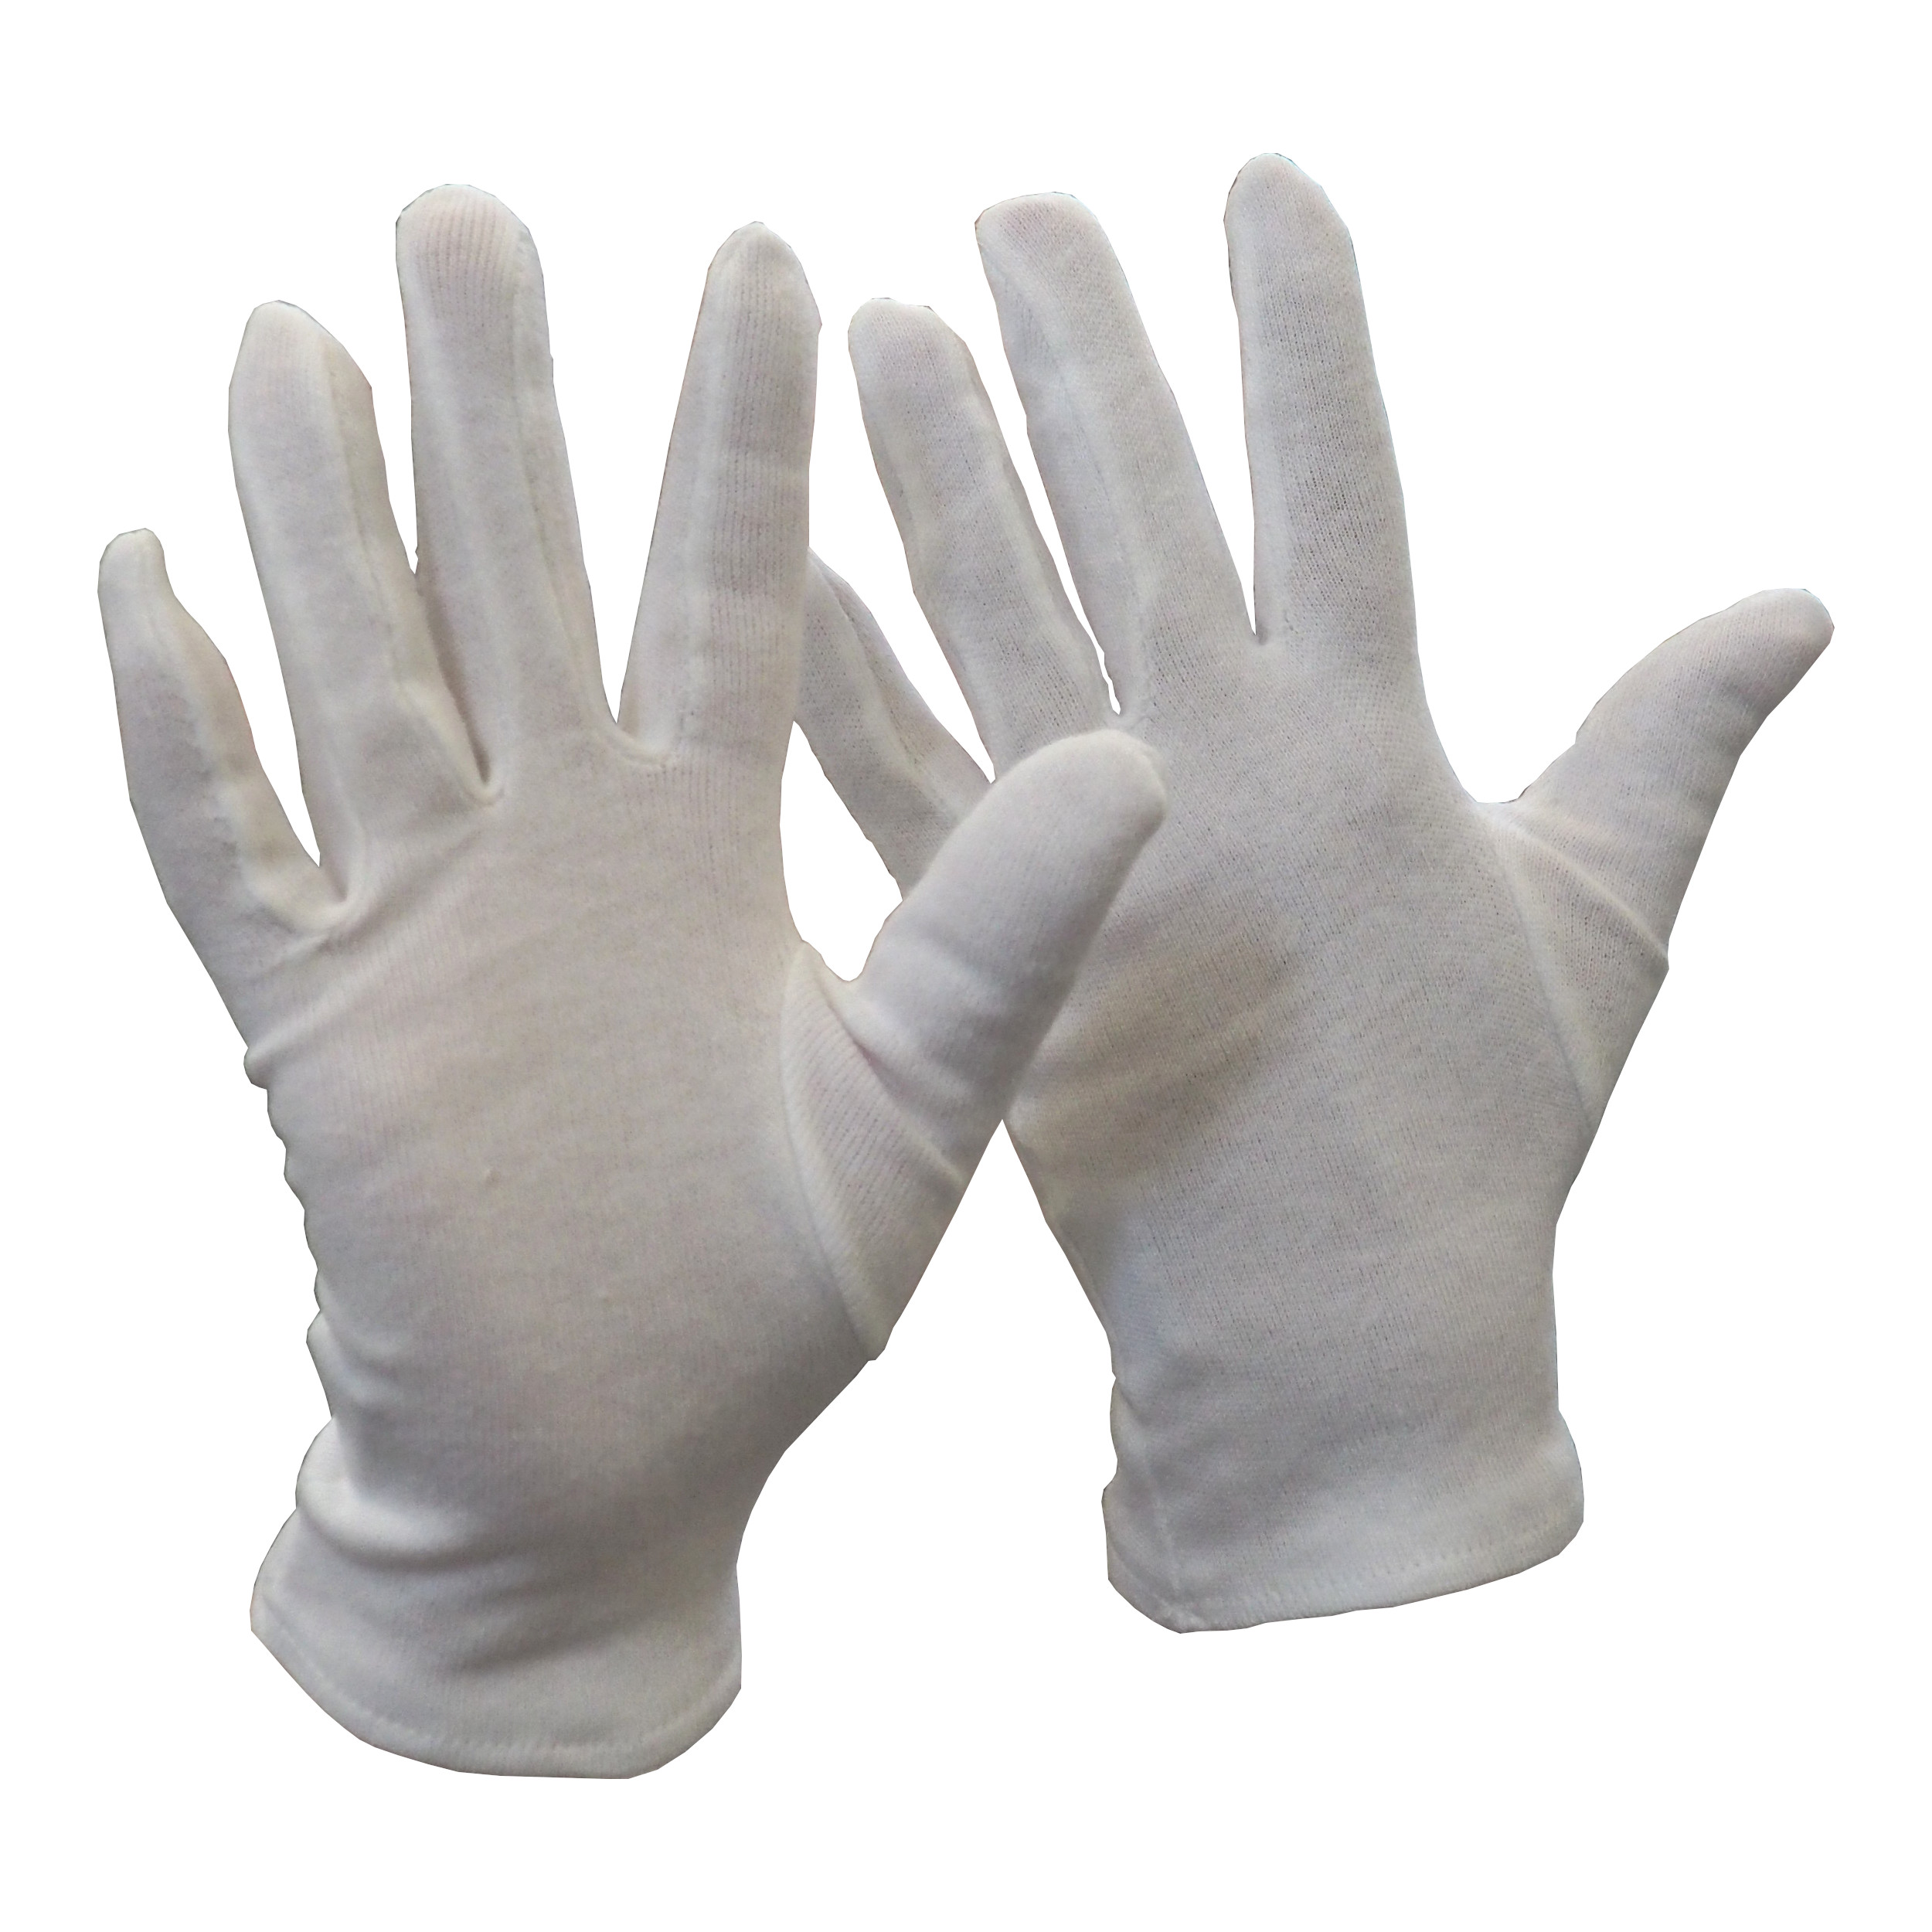 rukavice FAWA, textilní, bílé, velikost 8 0.02 Kg TOP Sklad4 606072 34